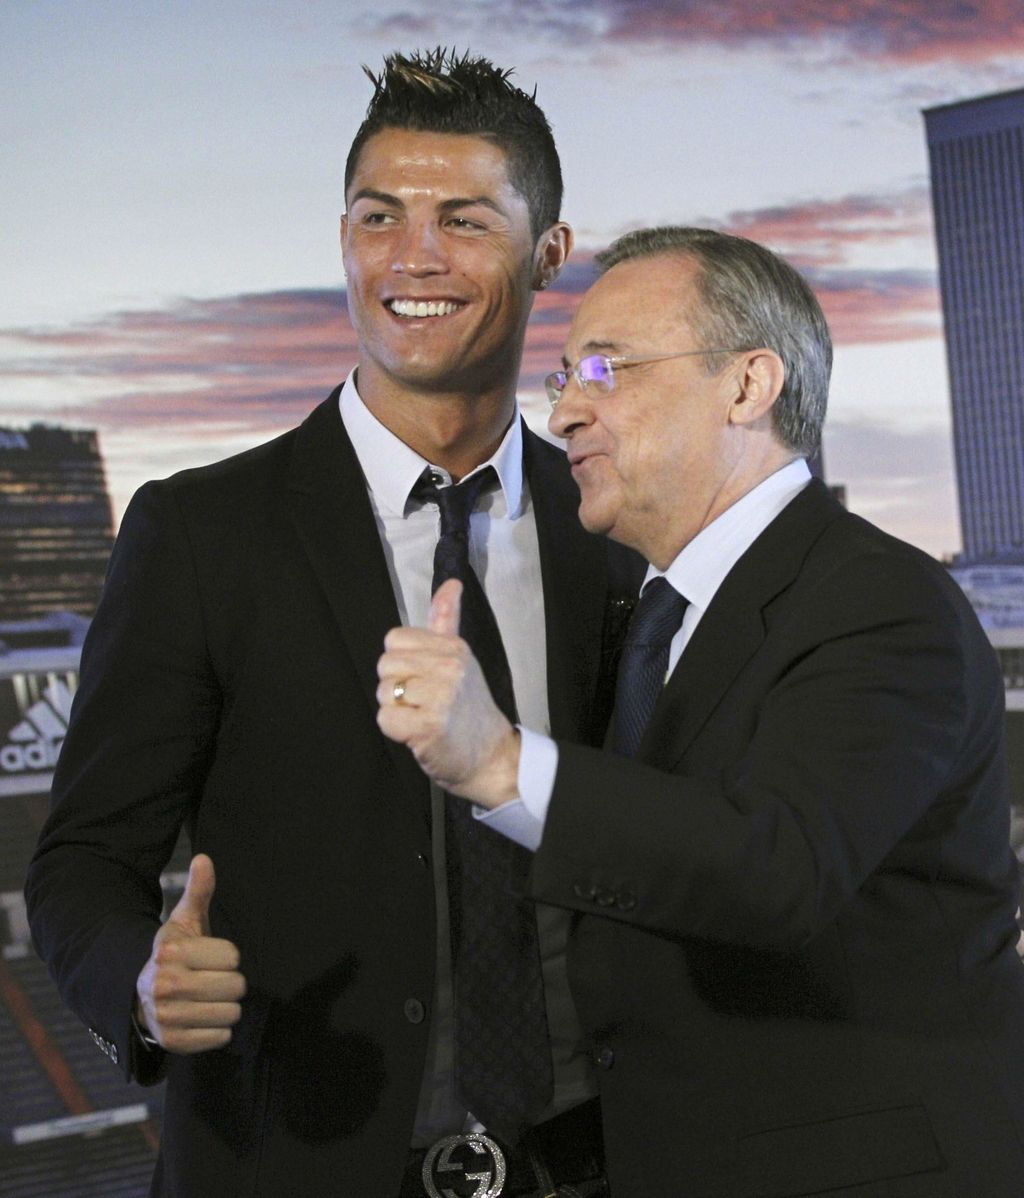 Cristiano Ronaldo se queda en el Madrid